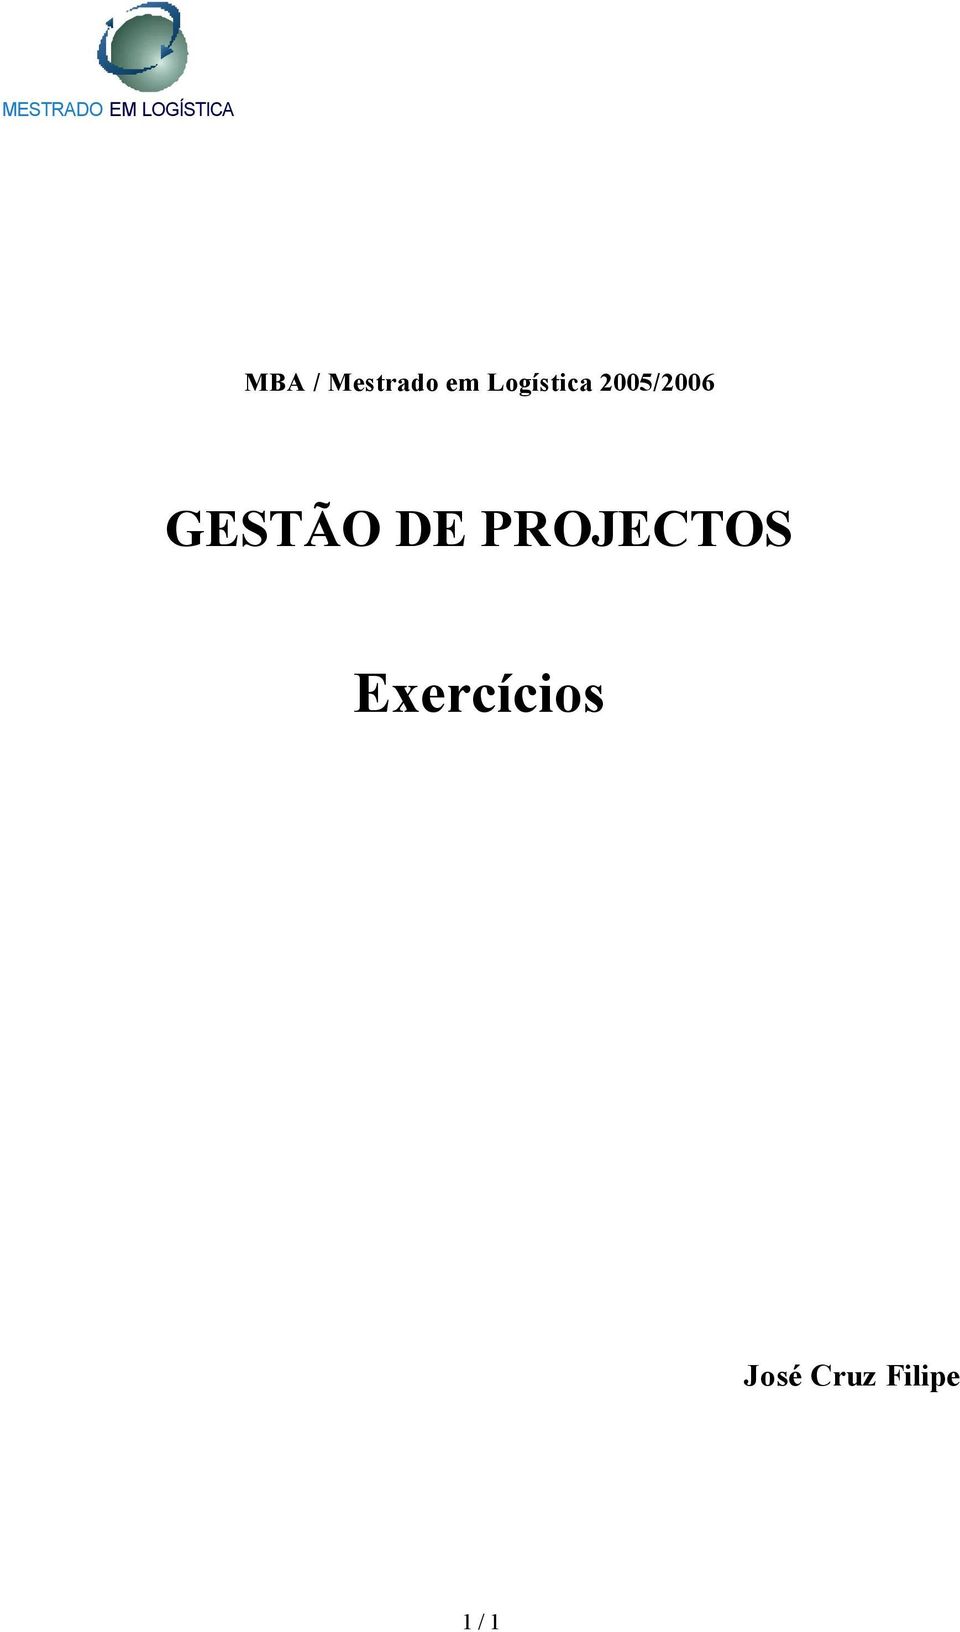 2005/2006 GESTÃO DE